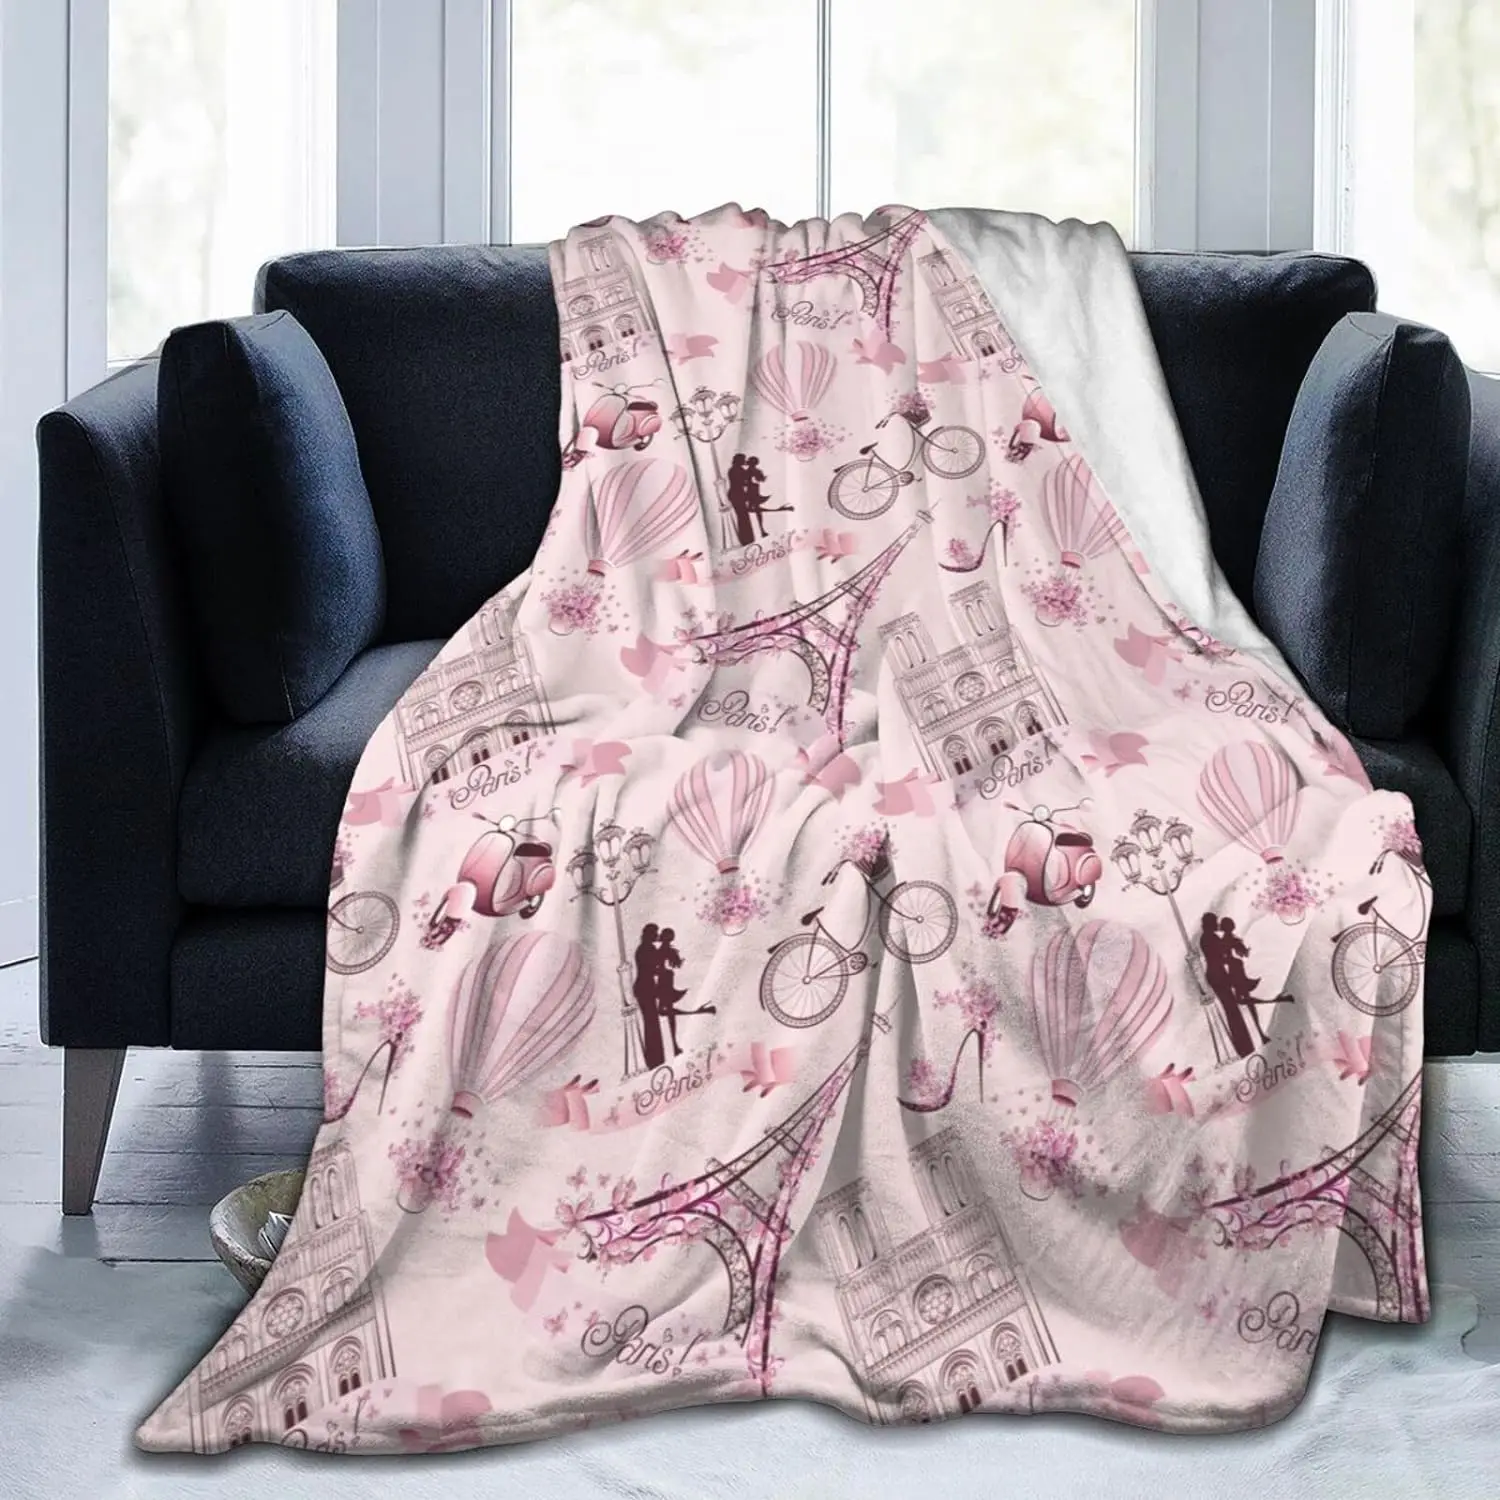 

Одеяло с изображением Эйфелевой башни Парижа, всесезонные декоративные флисовые одеяла для кровати, очень мягкие, теплые, романтичные, ко Дню Святого Валентина